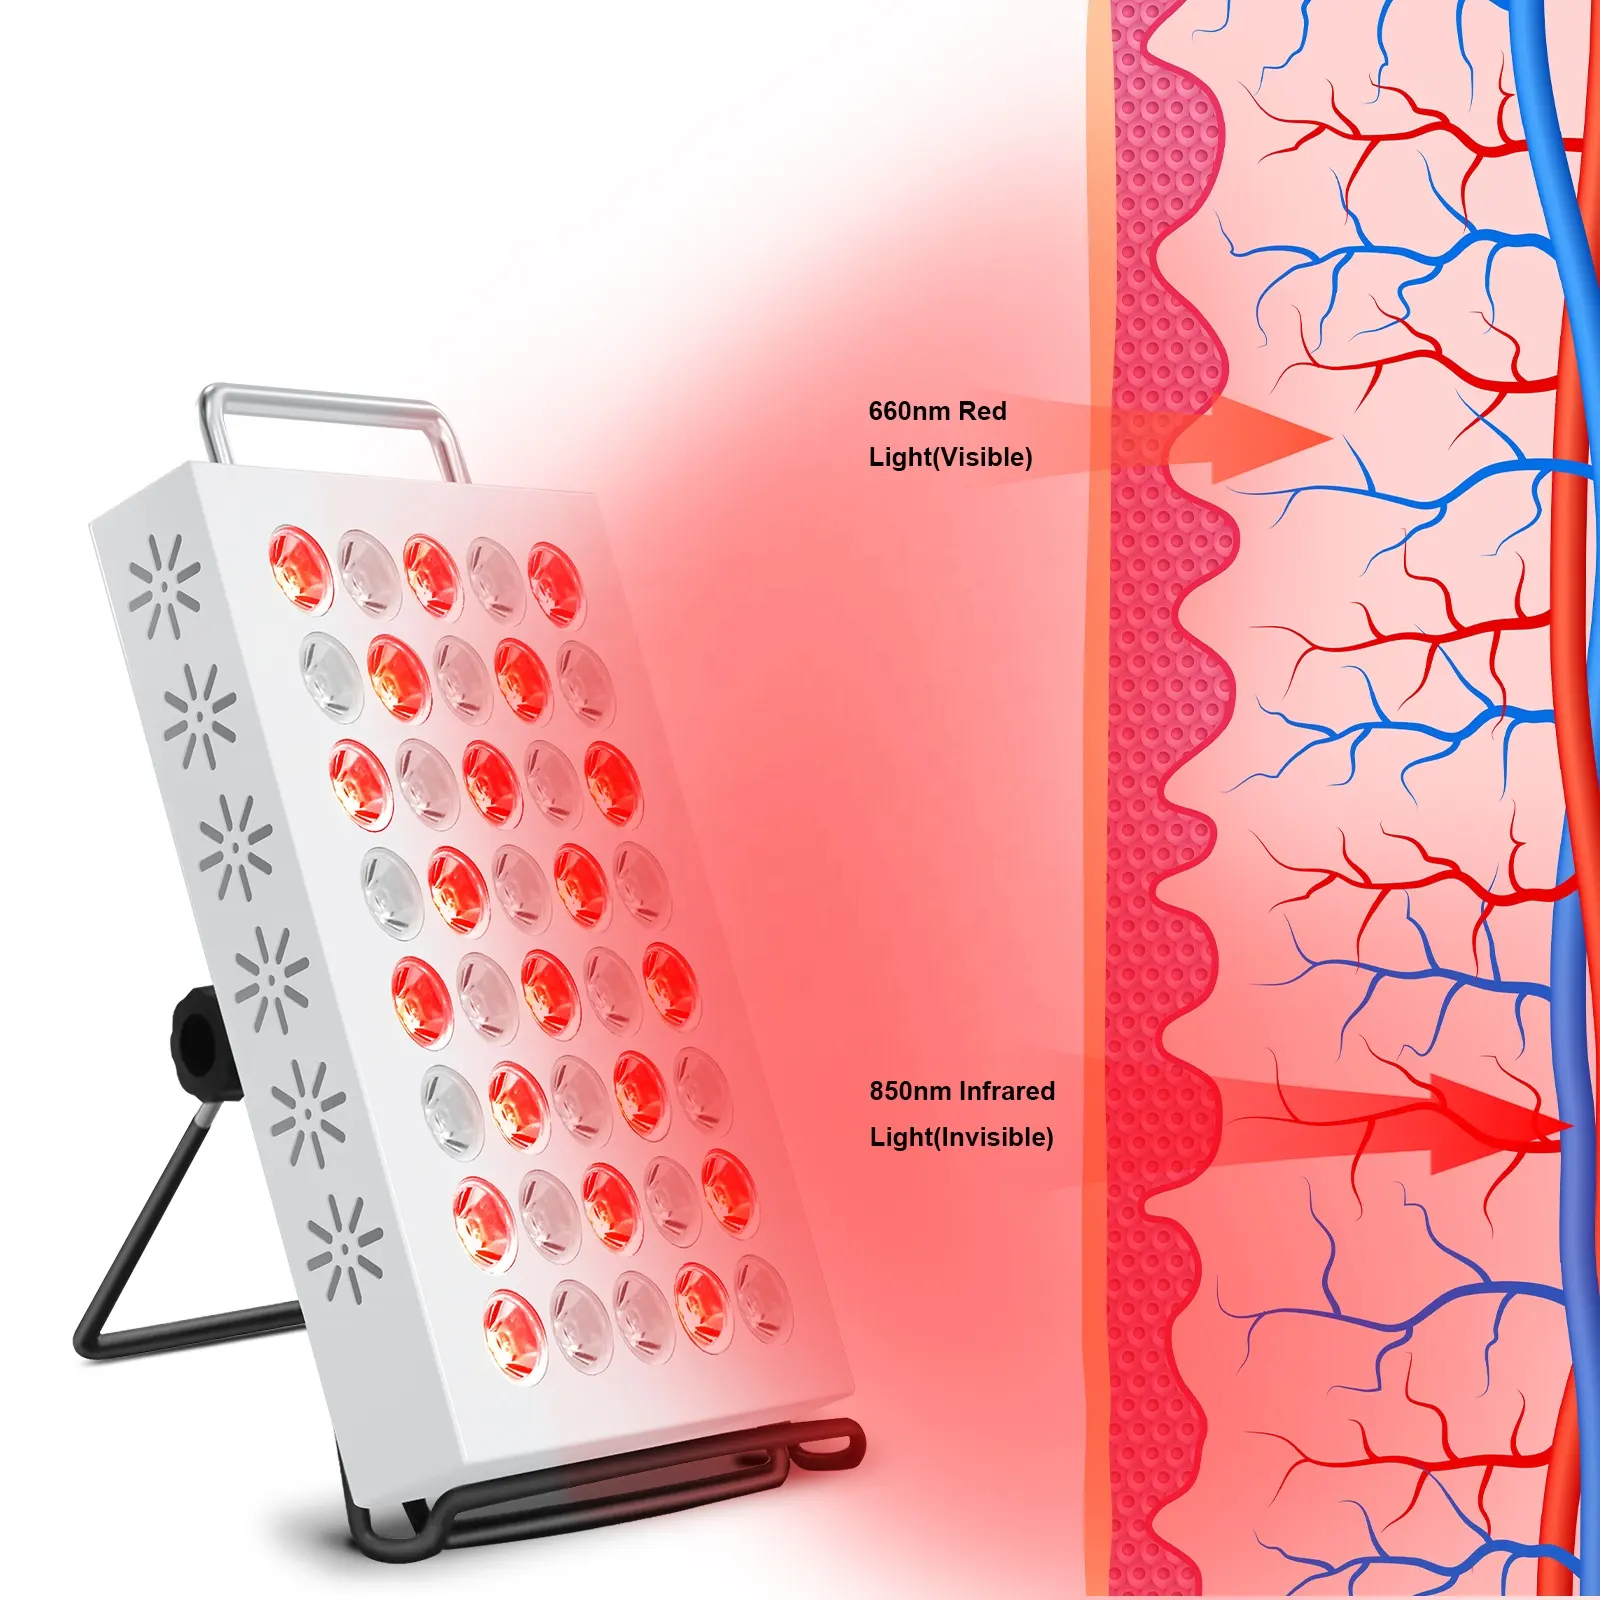 لوحة علاجية بالضوء الأحمر 40 مصباح LED ضوء مجمع بالأشعة تحت الحمراء 660 نانومتر و850 نانومتر جهاز علاج لتجميل الوجه والجسم مزيل للألم